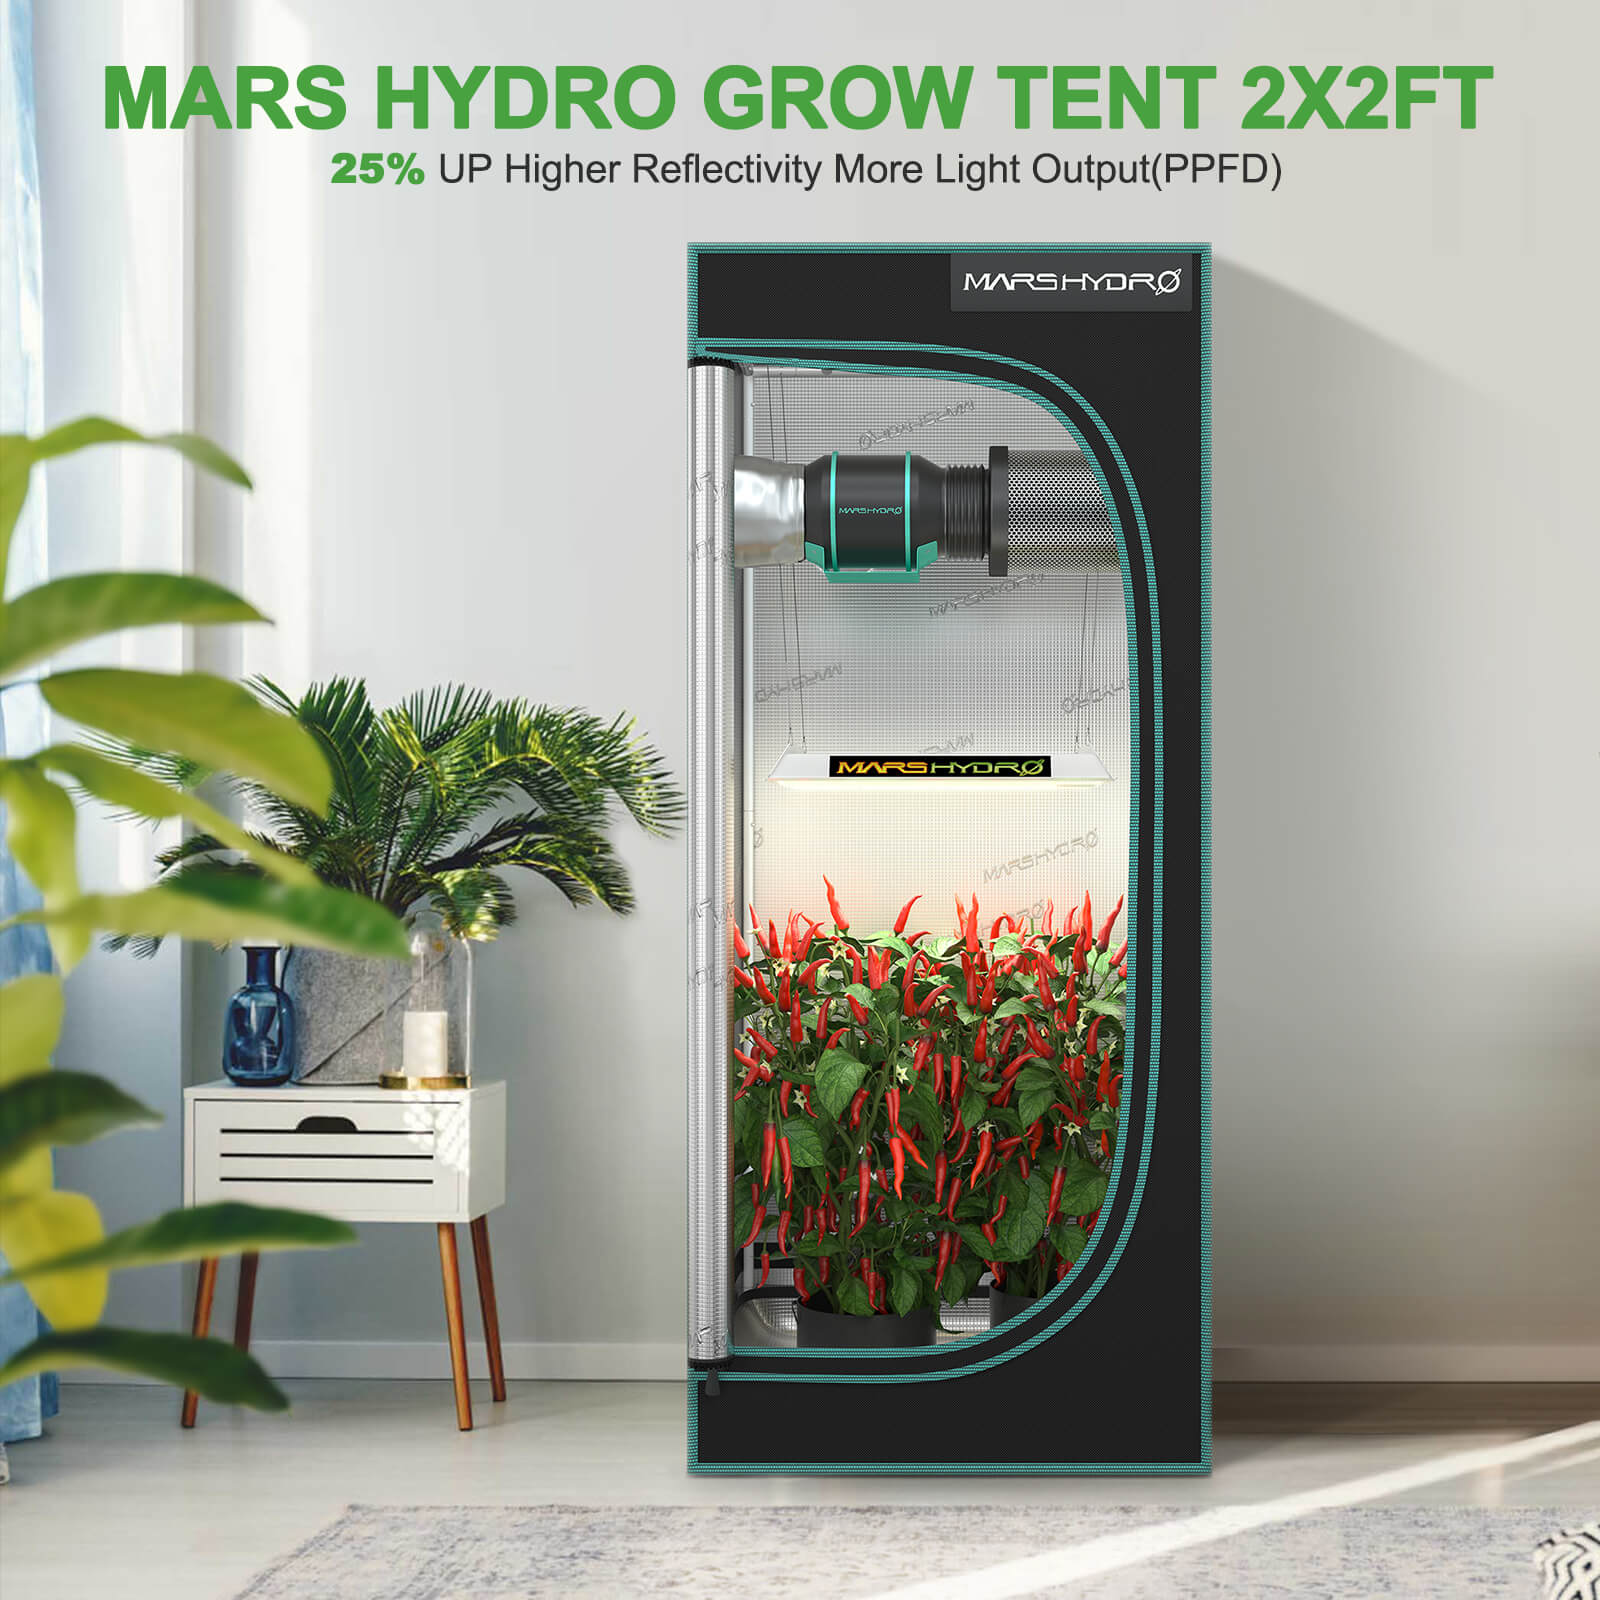 エバニュー 【Mars Hydro】120×120×200⭐️植物育成用グロウ水耕栽培